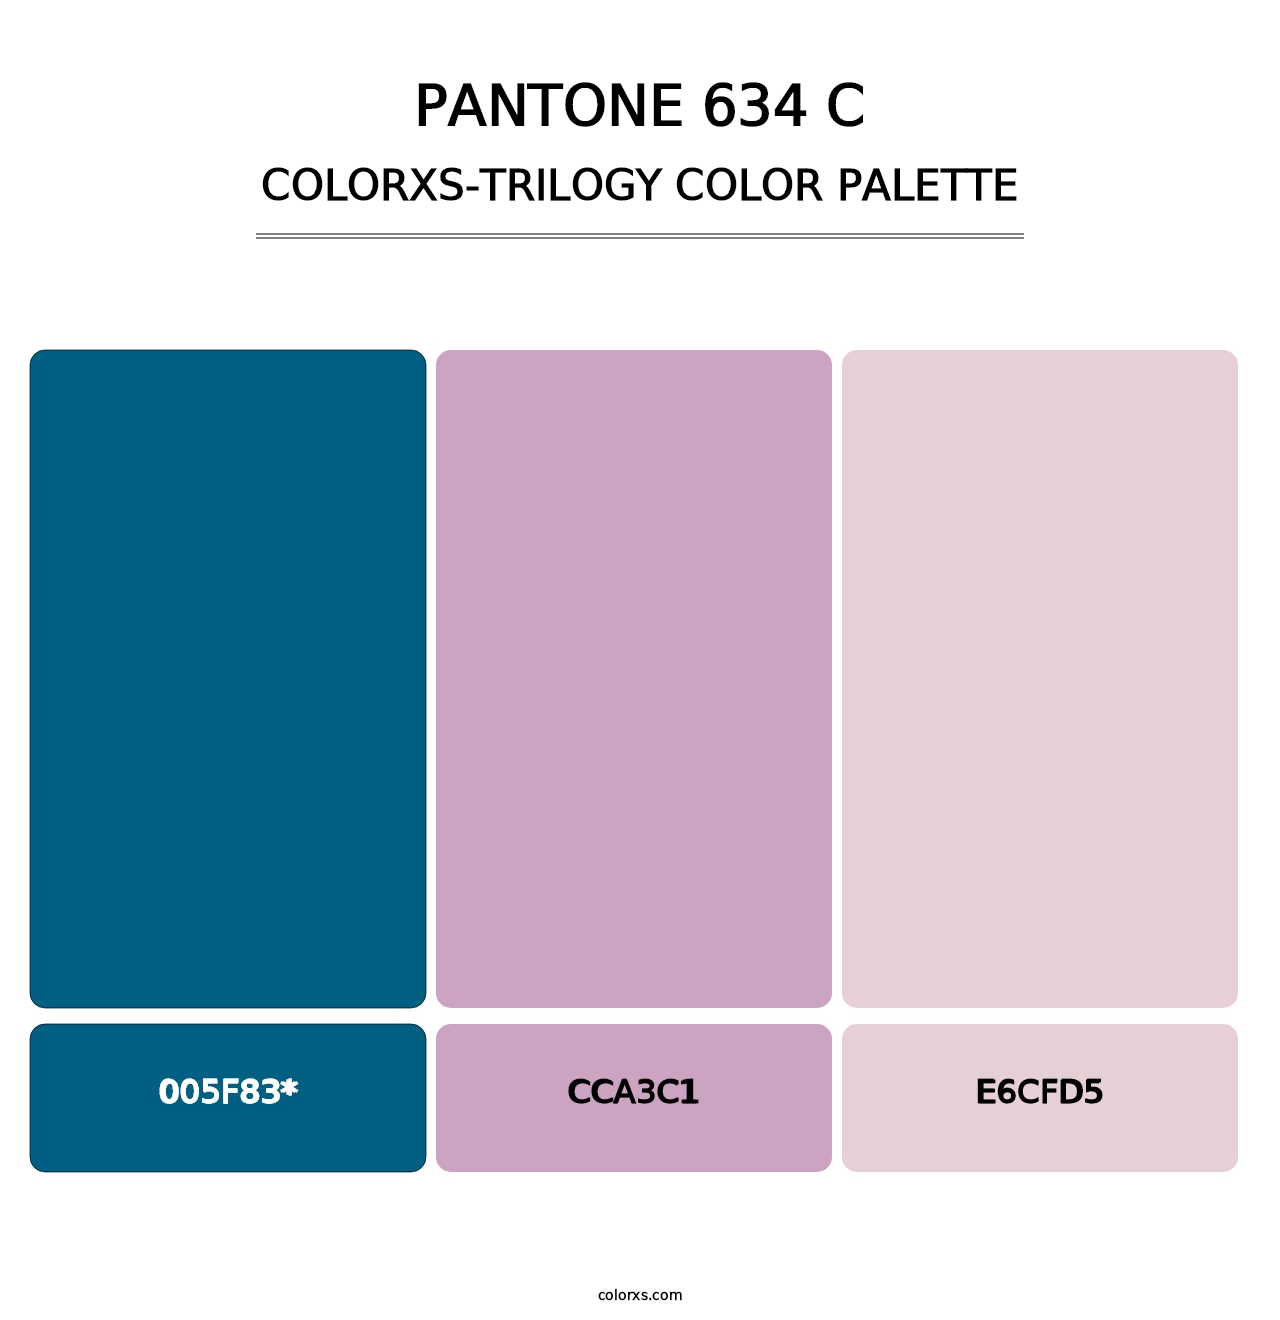 PANTONE 634 C - Colorxs Trilogy Palette